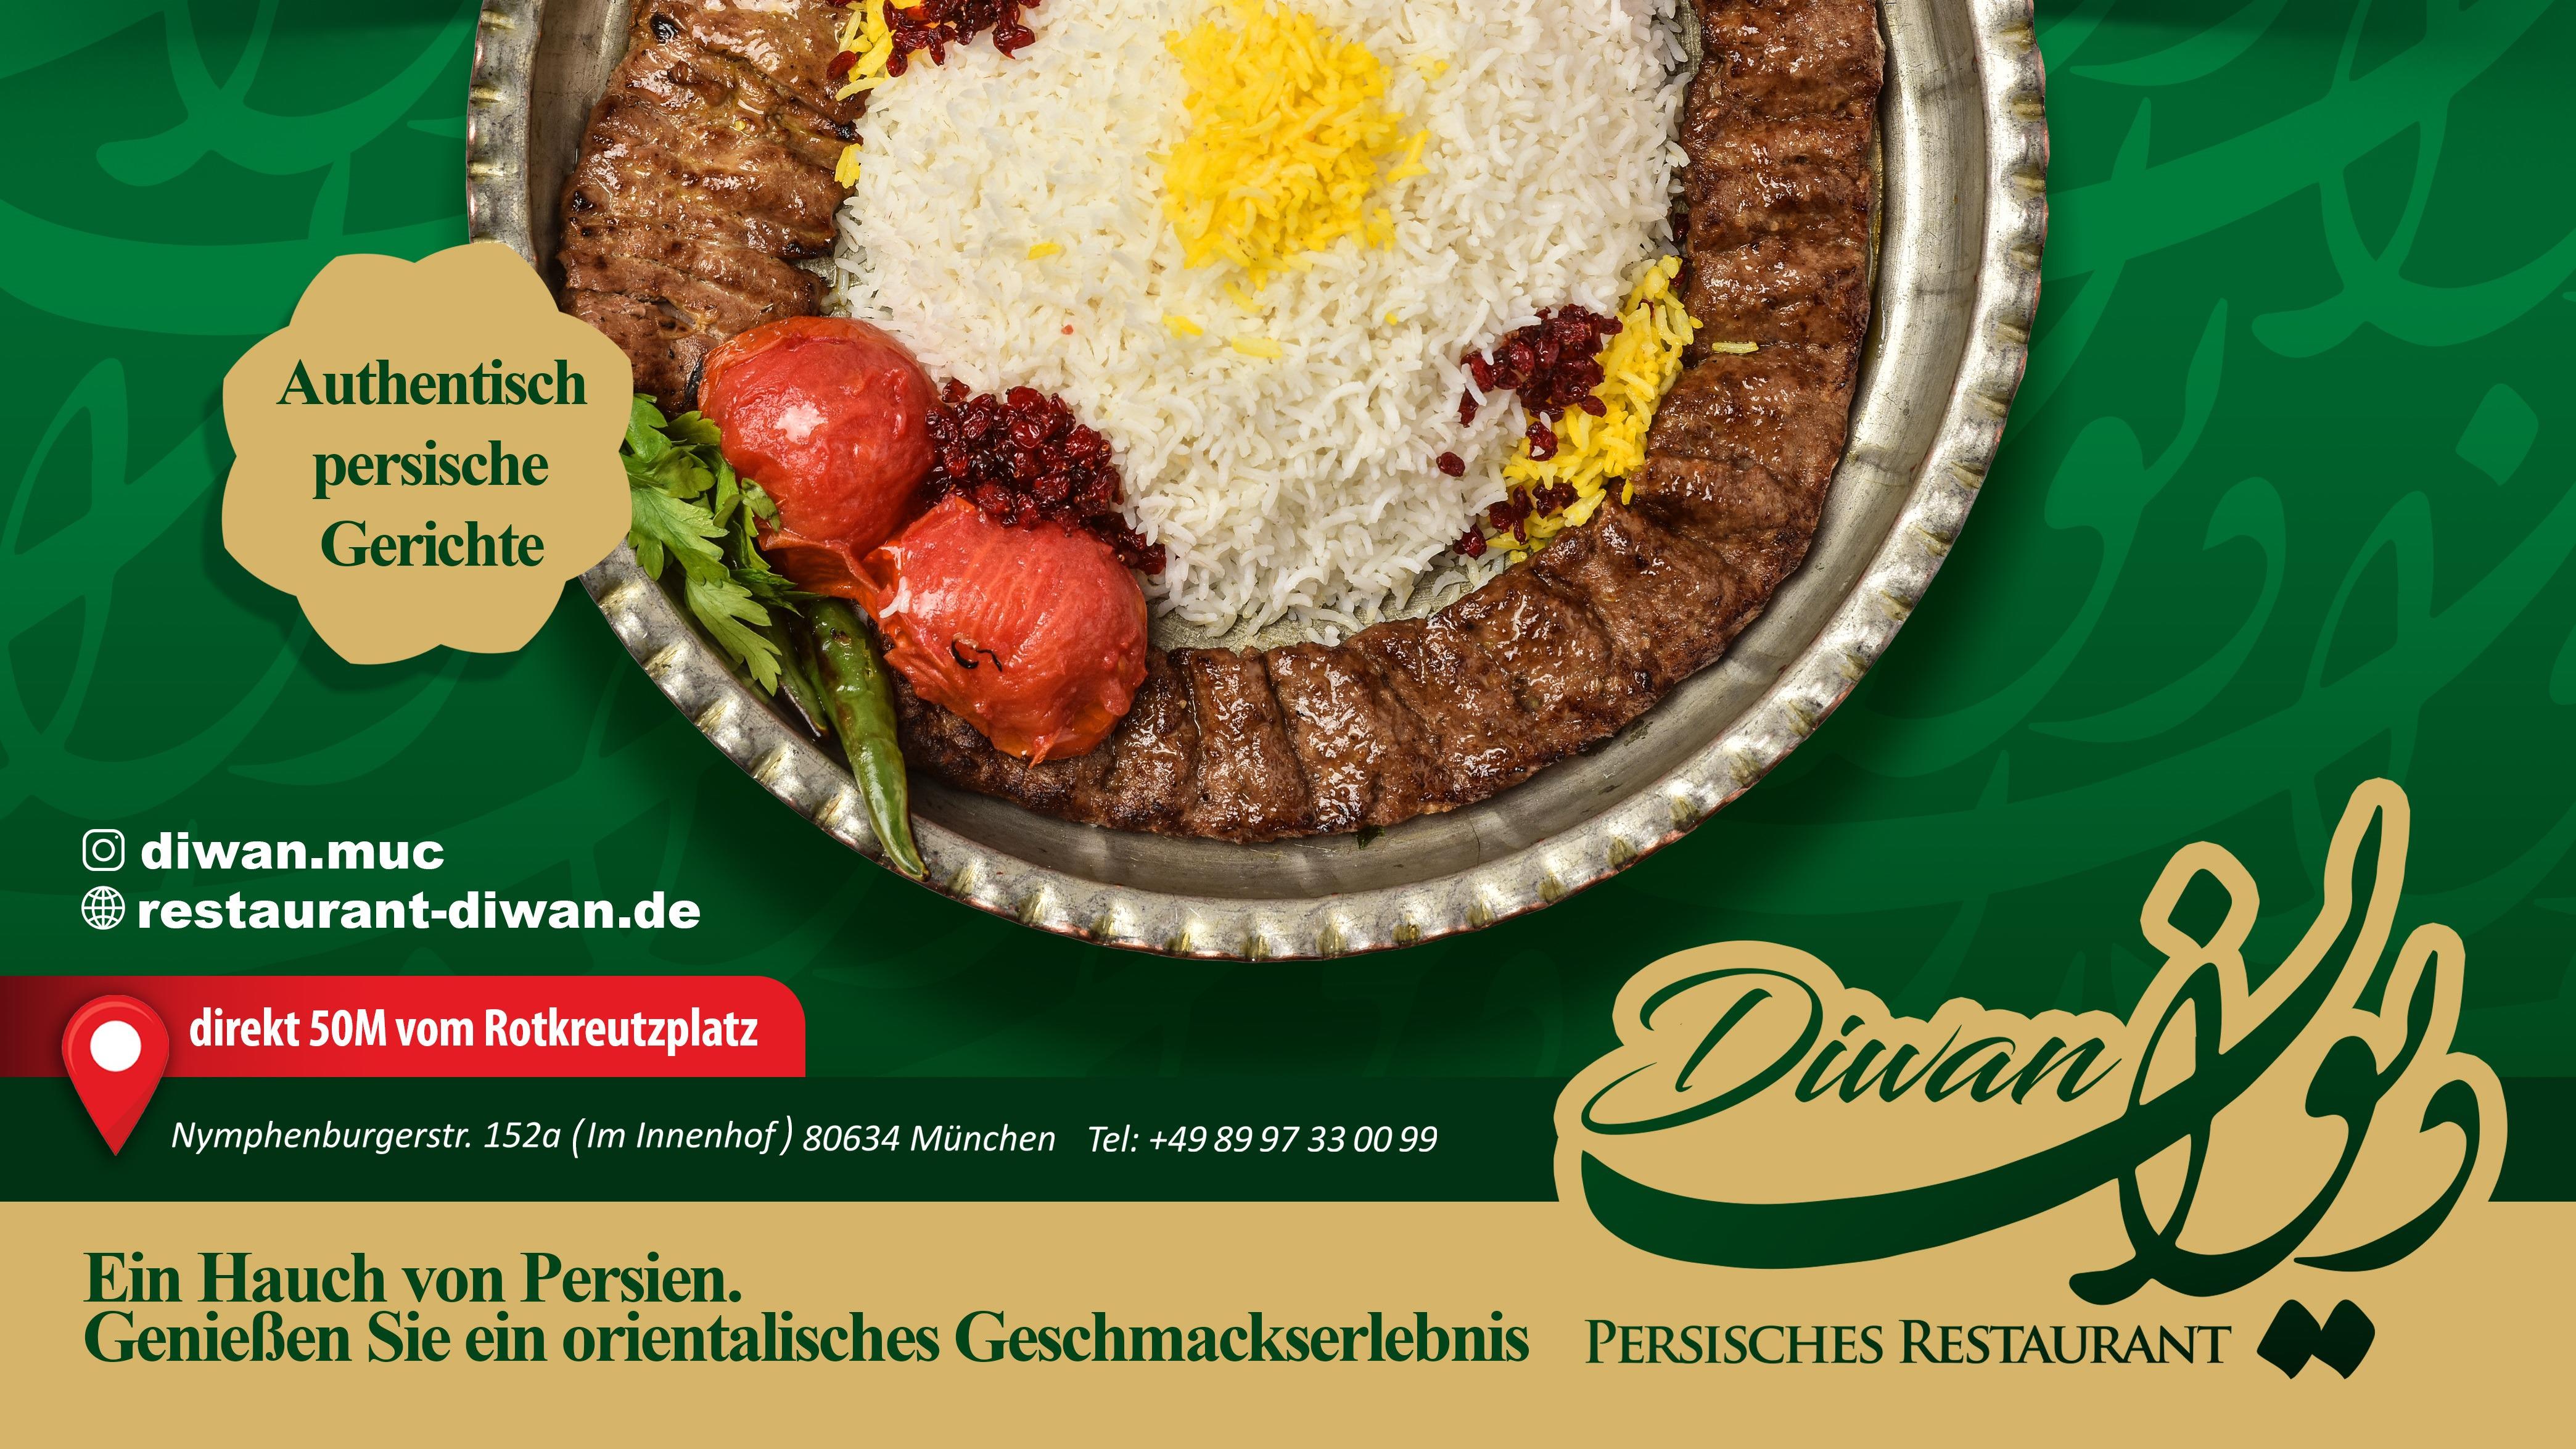 Restaurant Diwan München 089 97330099